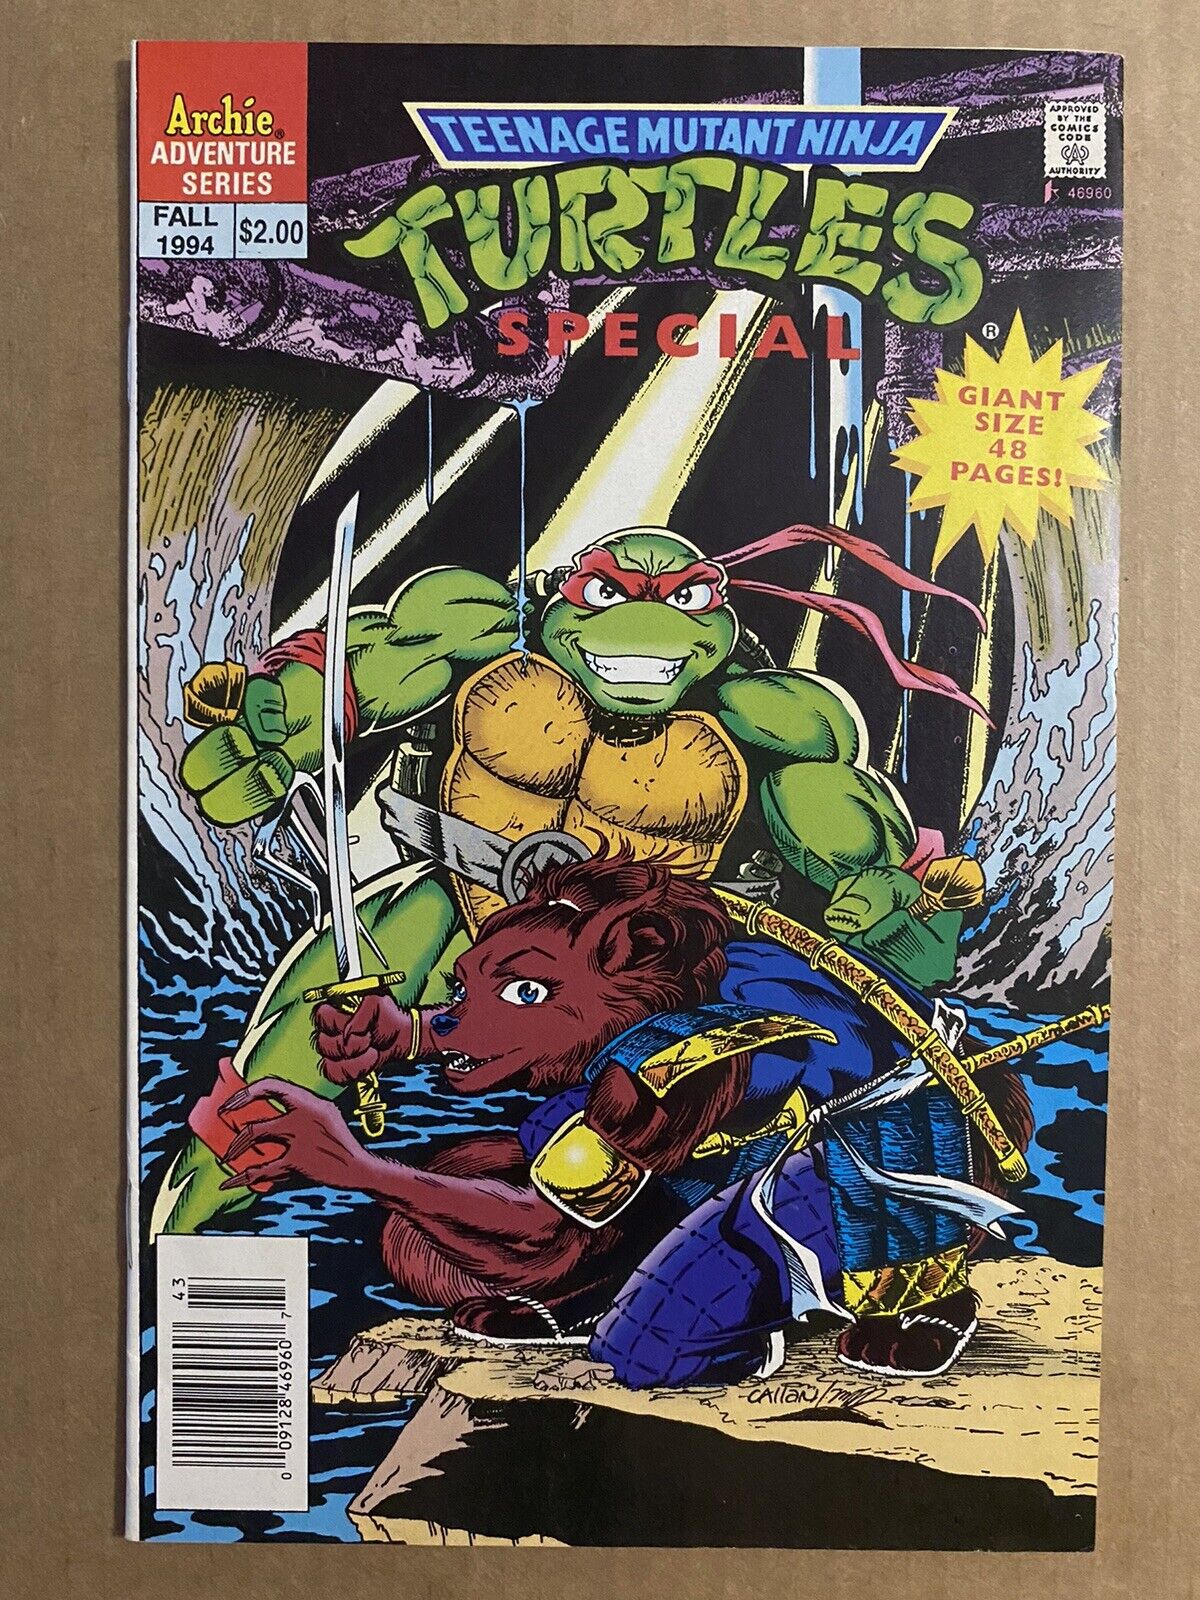 Teenage Mutant Ninja Turtles Adventures #1 Fall 1994 Newsstand Variant Comic